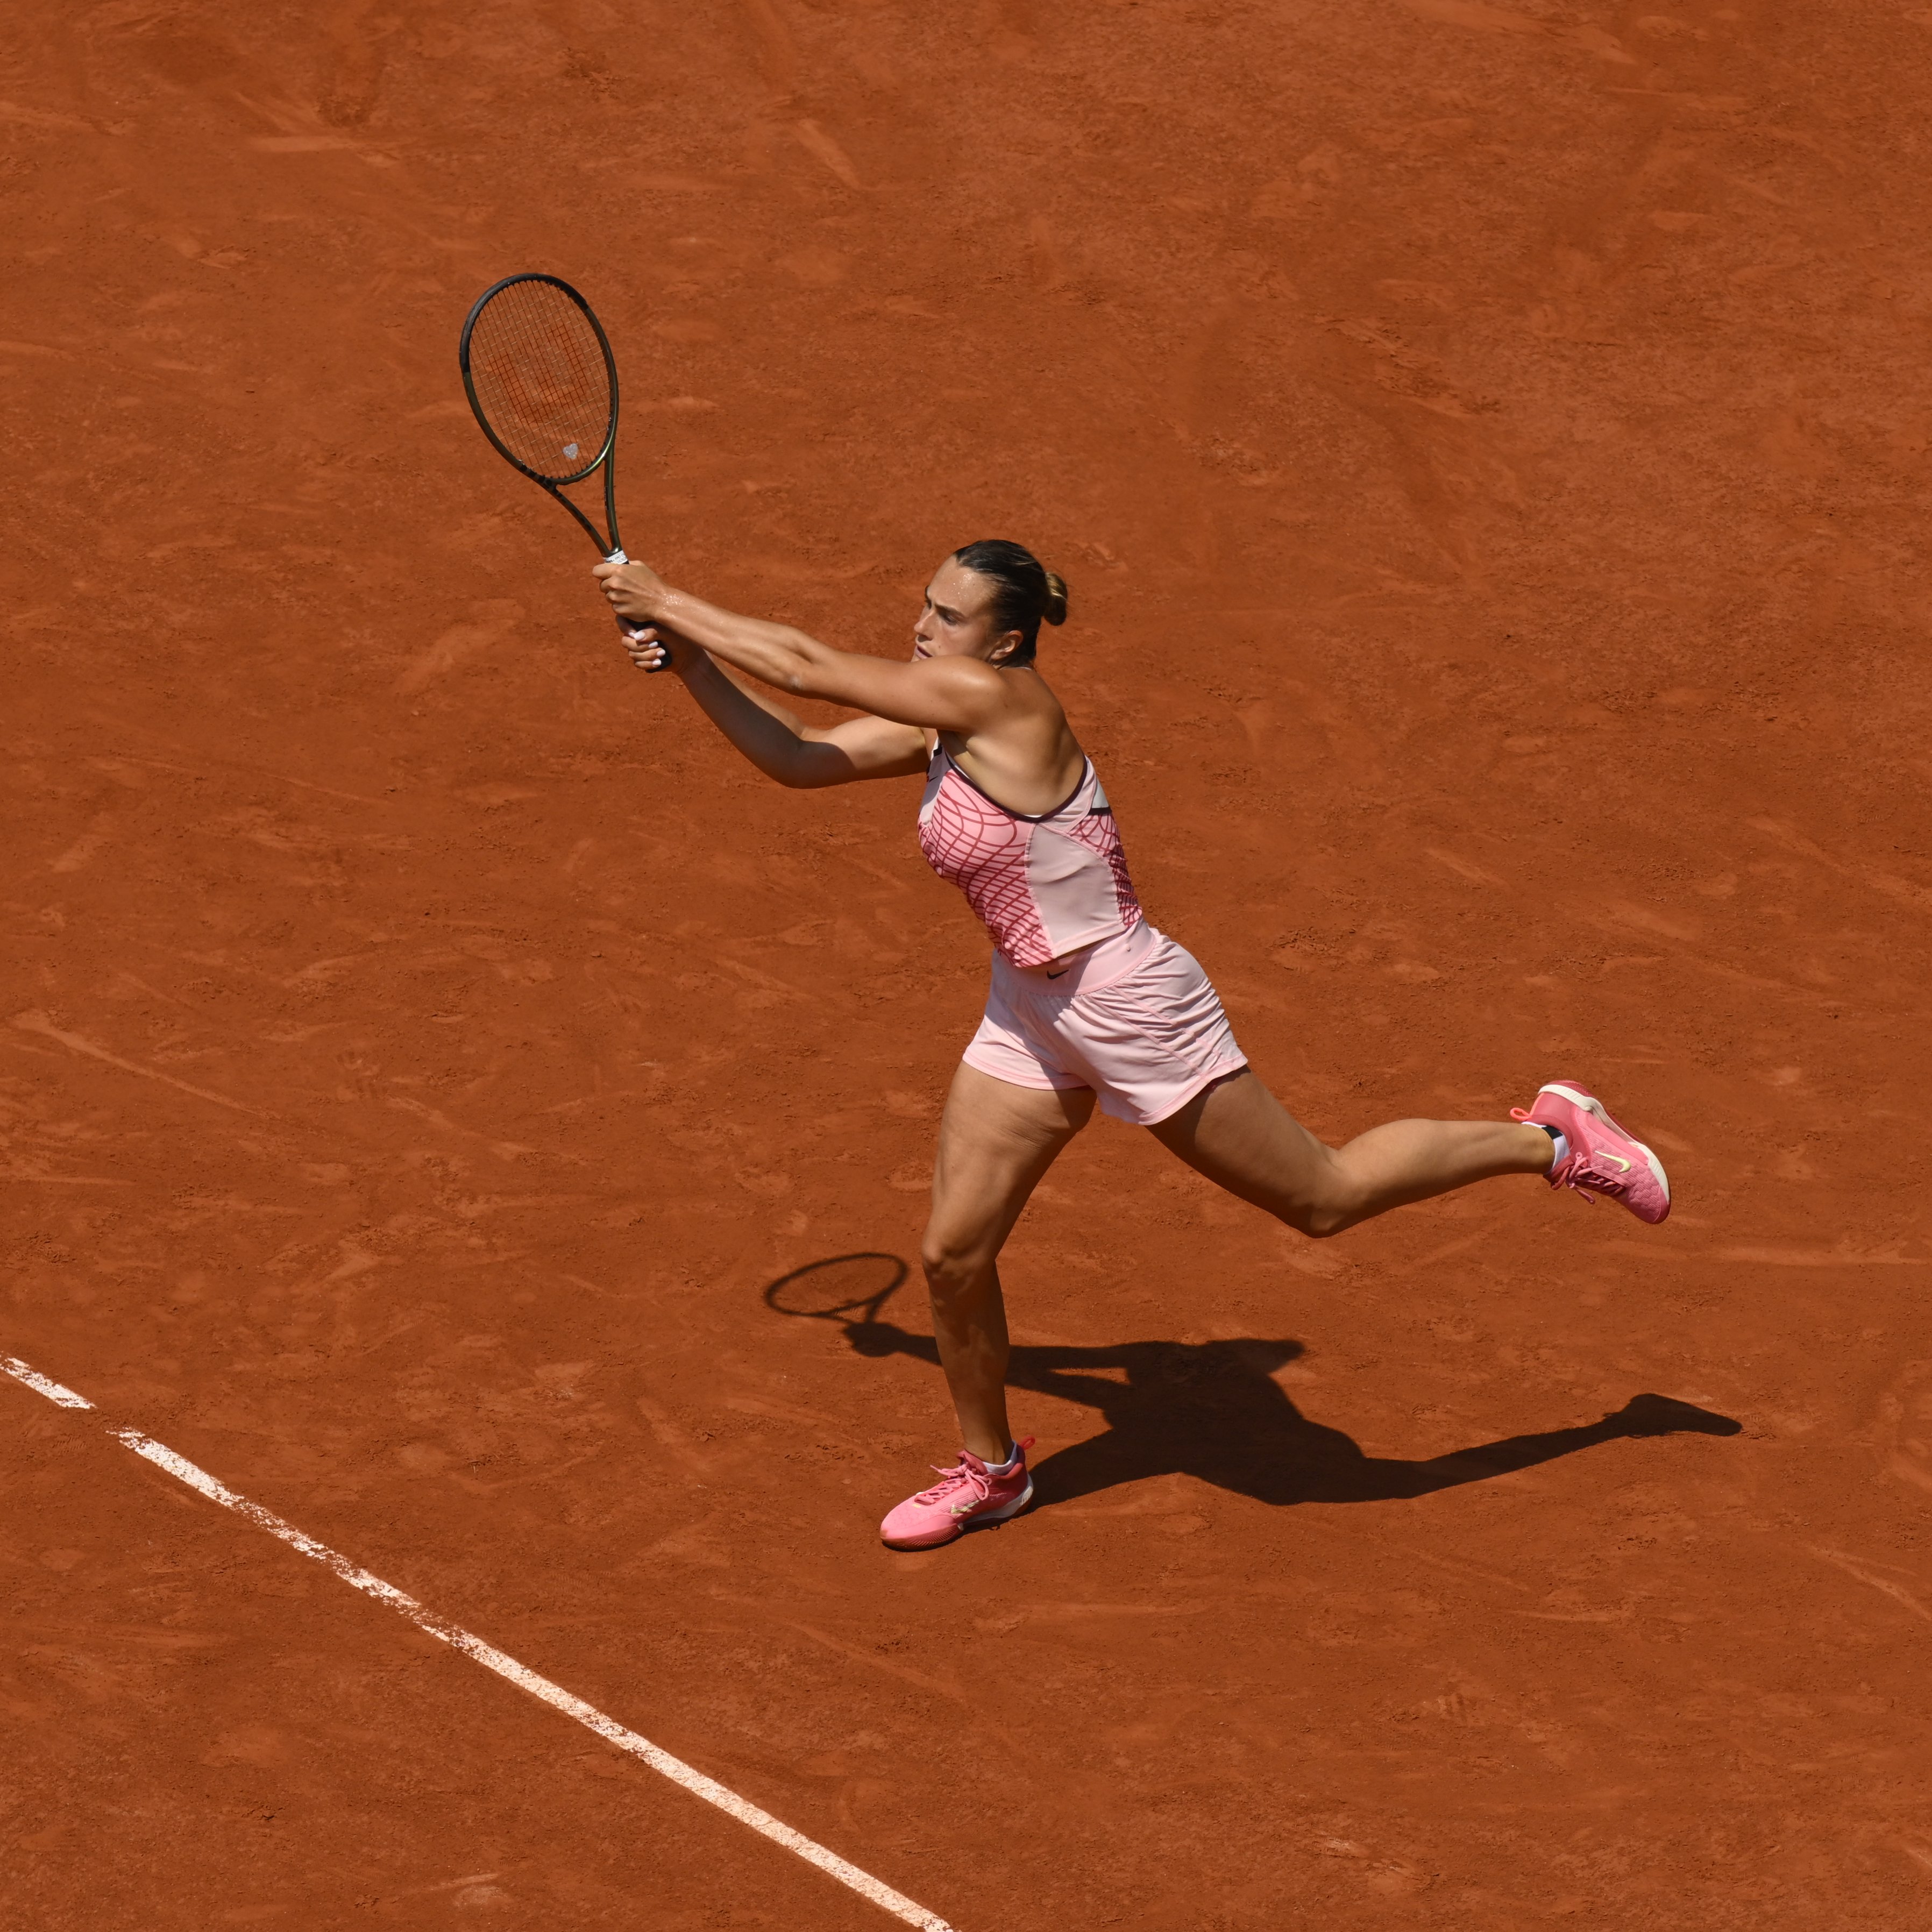 TRỰC TIẾP Pháp Mở rộng: Fierce Aryna Sabalenka chỉ còn một bước nữa là đến CHUNG KẾT Roland Garros, đối đầu với Karolina Muchova ở bán kết.  Aryna cũng đang để mắt tới vị trí số 1 thế giới.